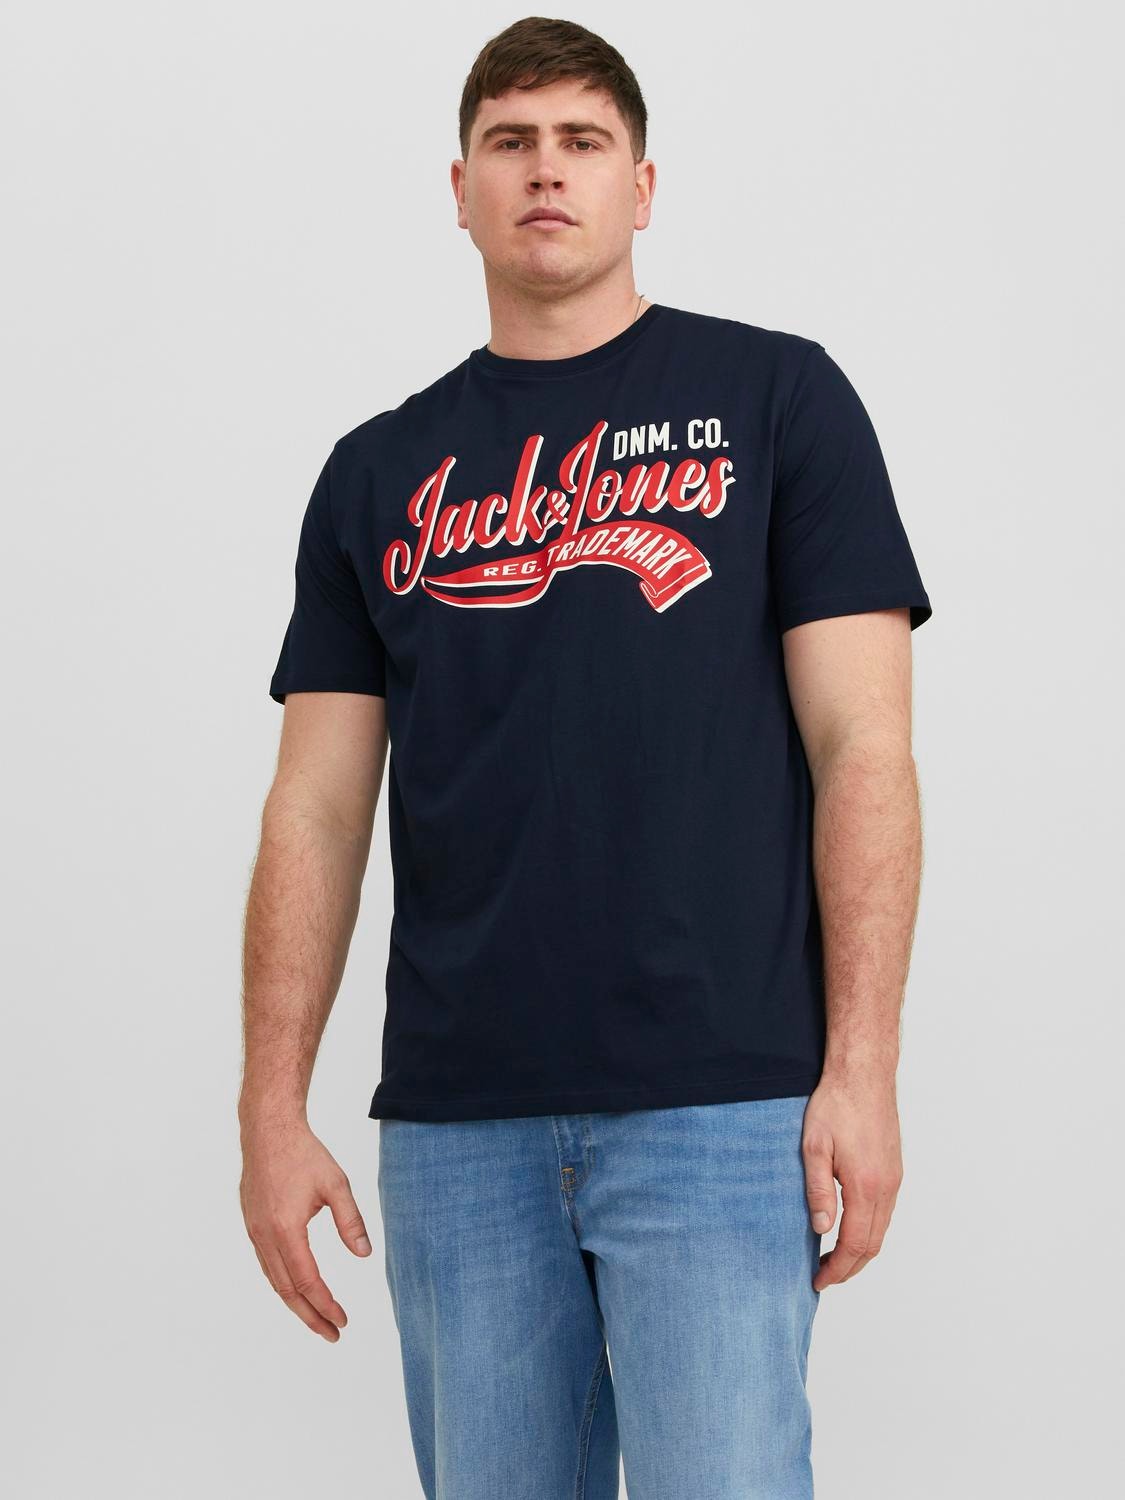 Jack & Jones Plus Size Logotipas Marškinėliai -Navy Blazer - 12243611